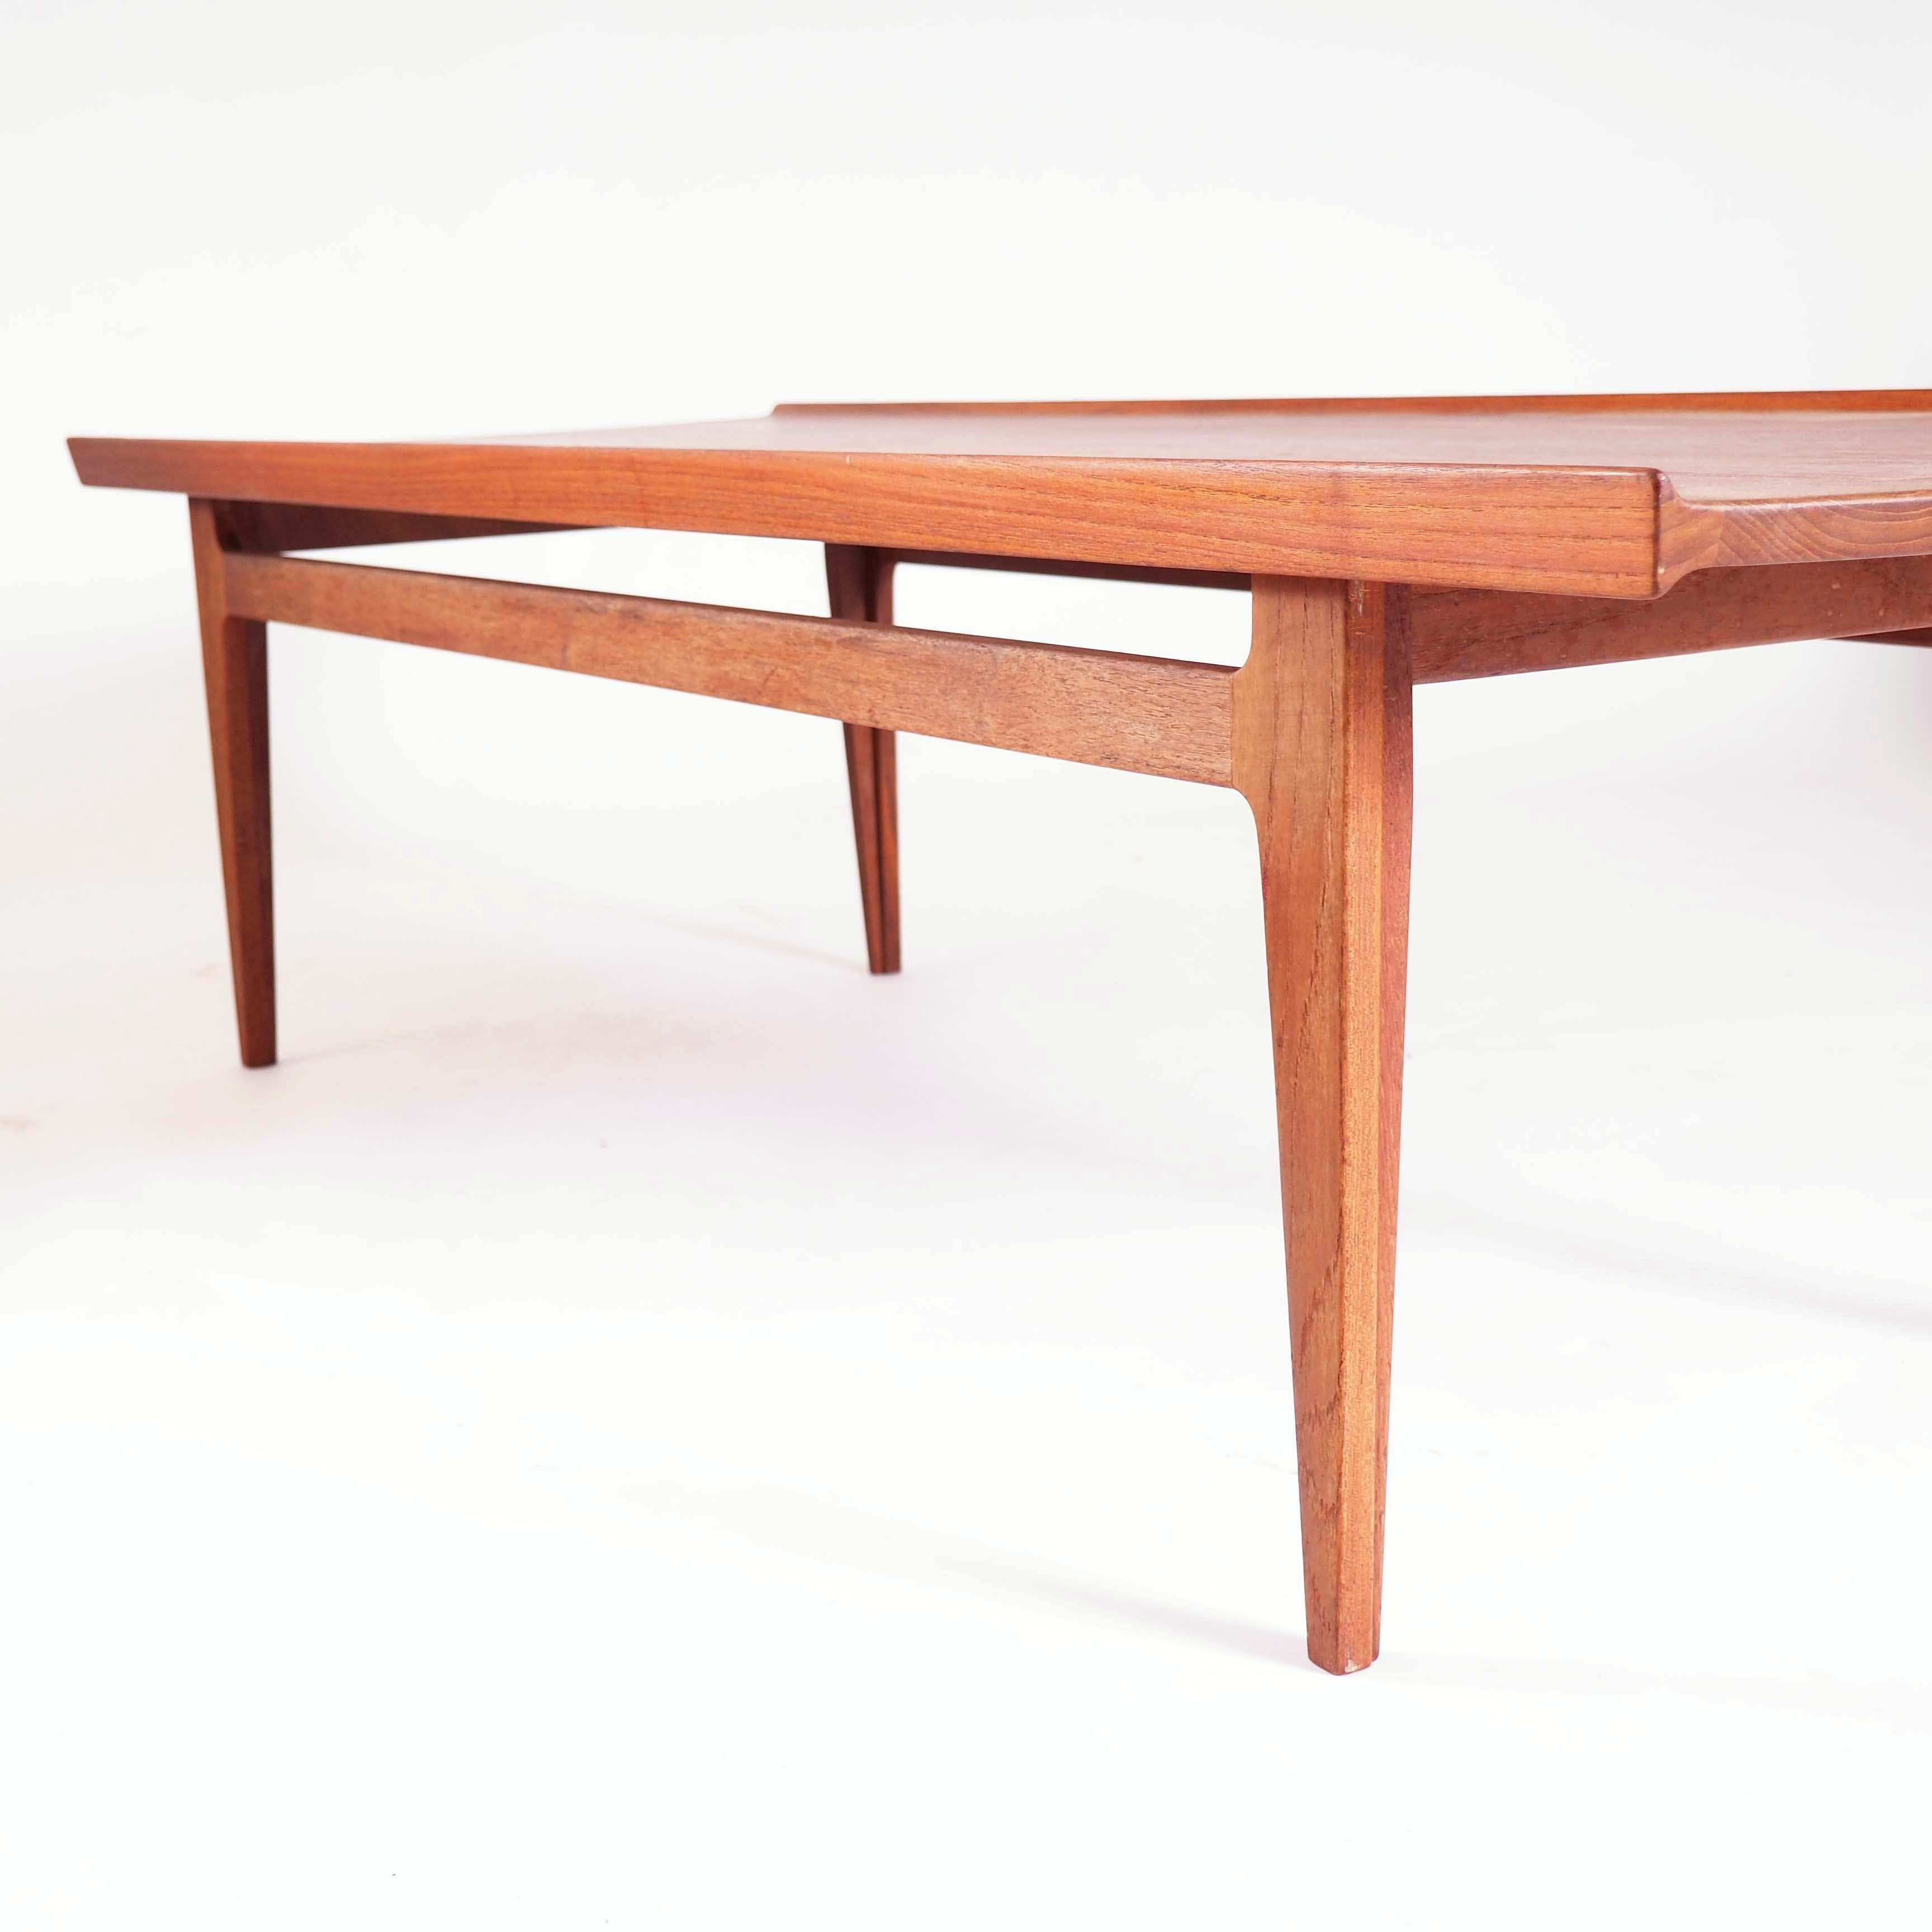 Cette table basse a été conçue par le designer danois Finn Juhl dans les années 1950 et fabriquée par France & Son. La table est en teck massif et de très haute qualité.